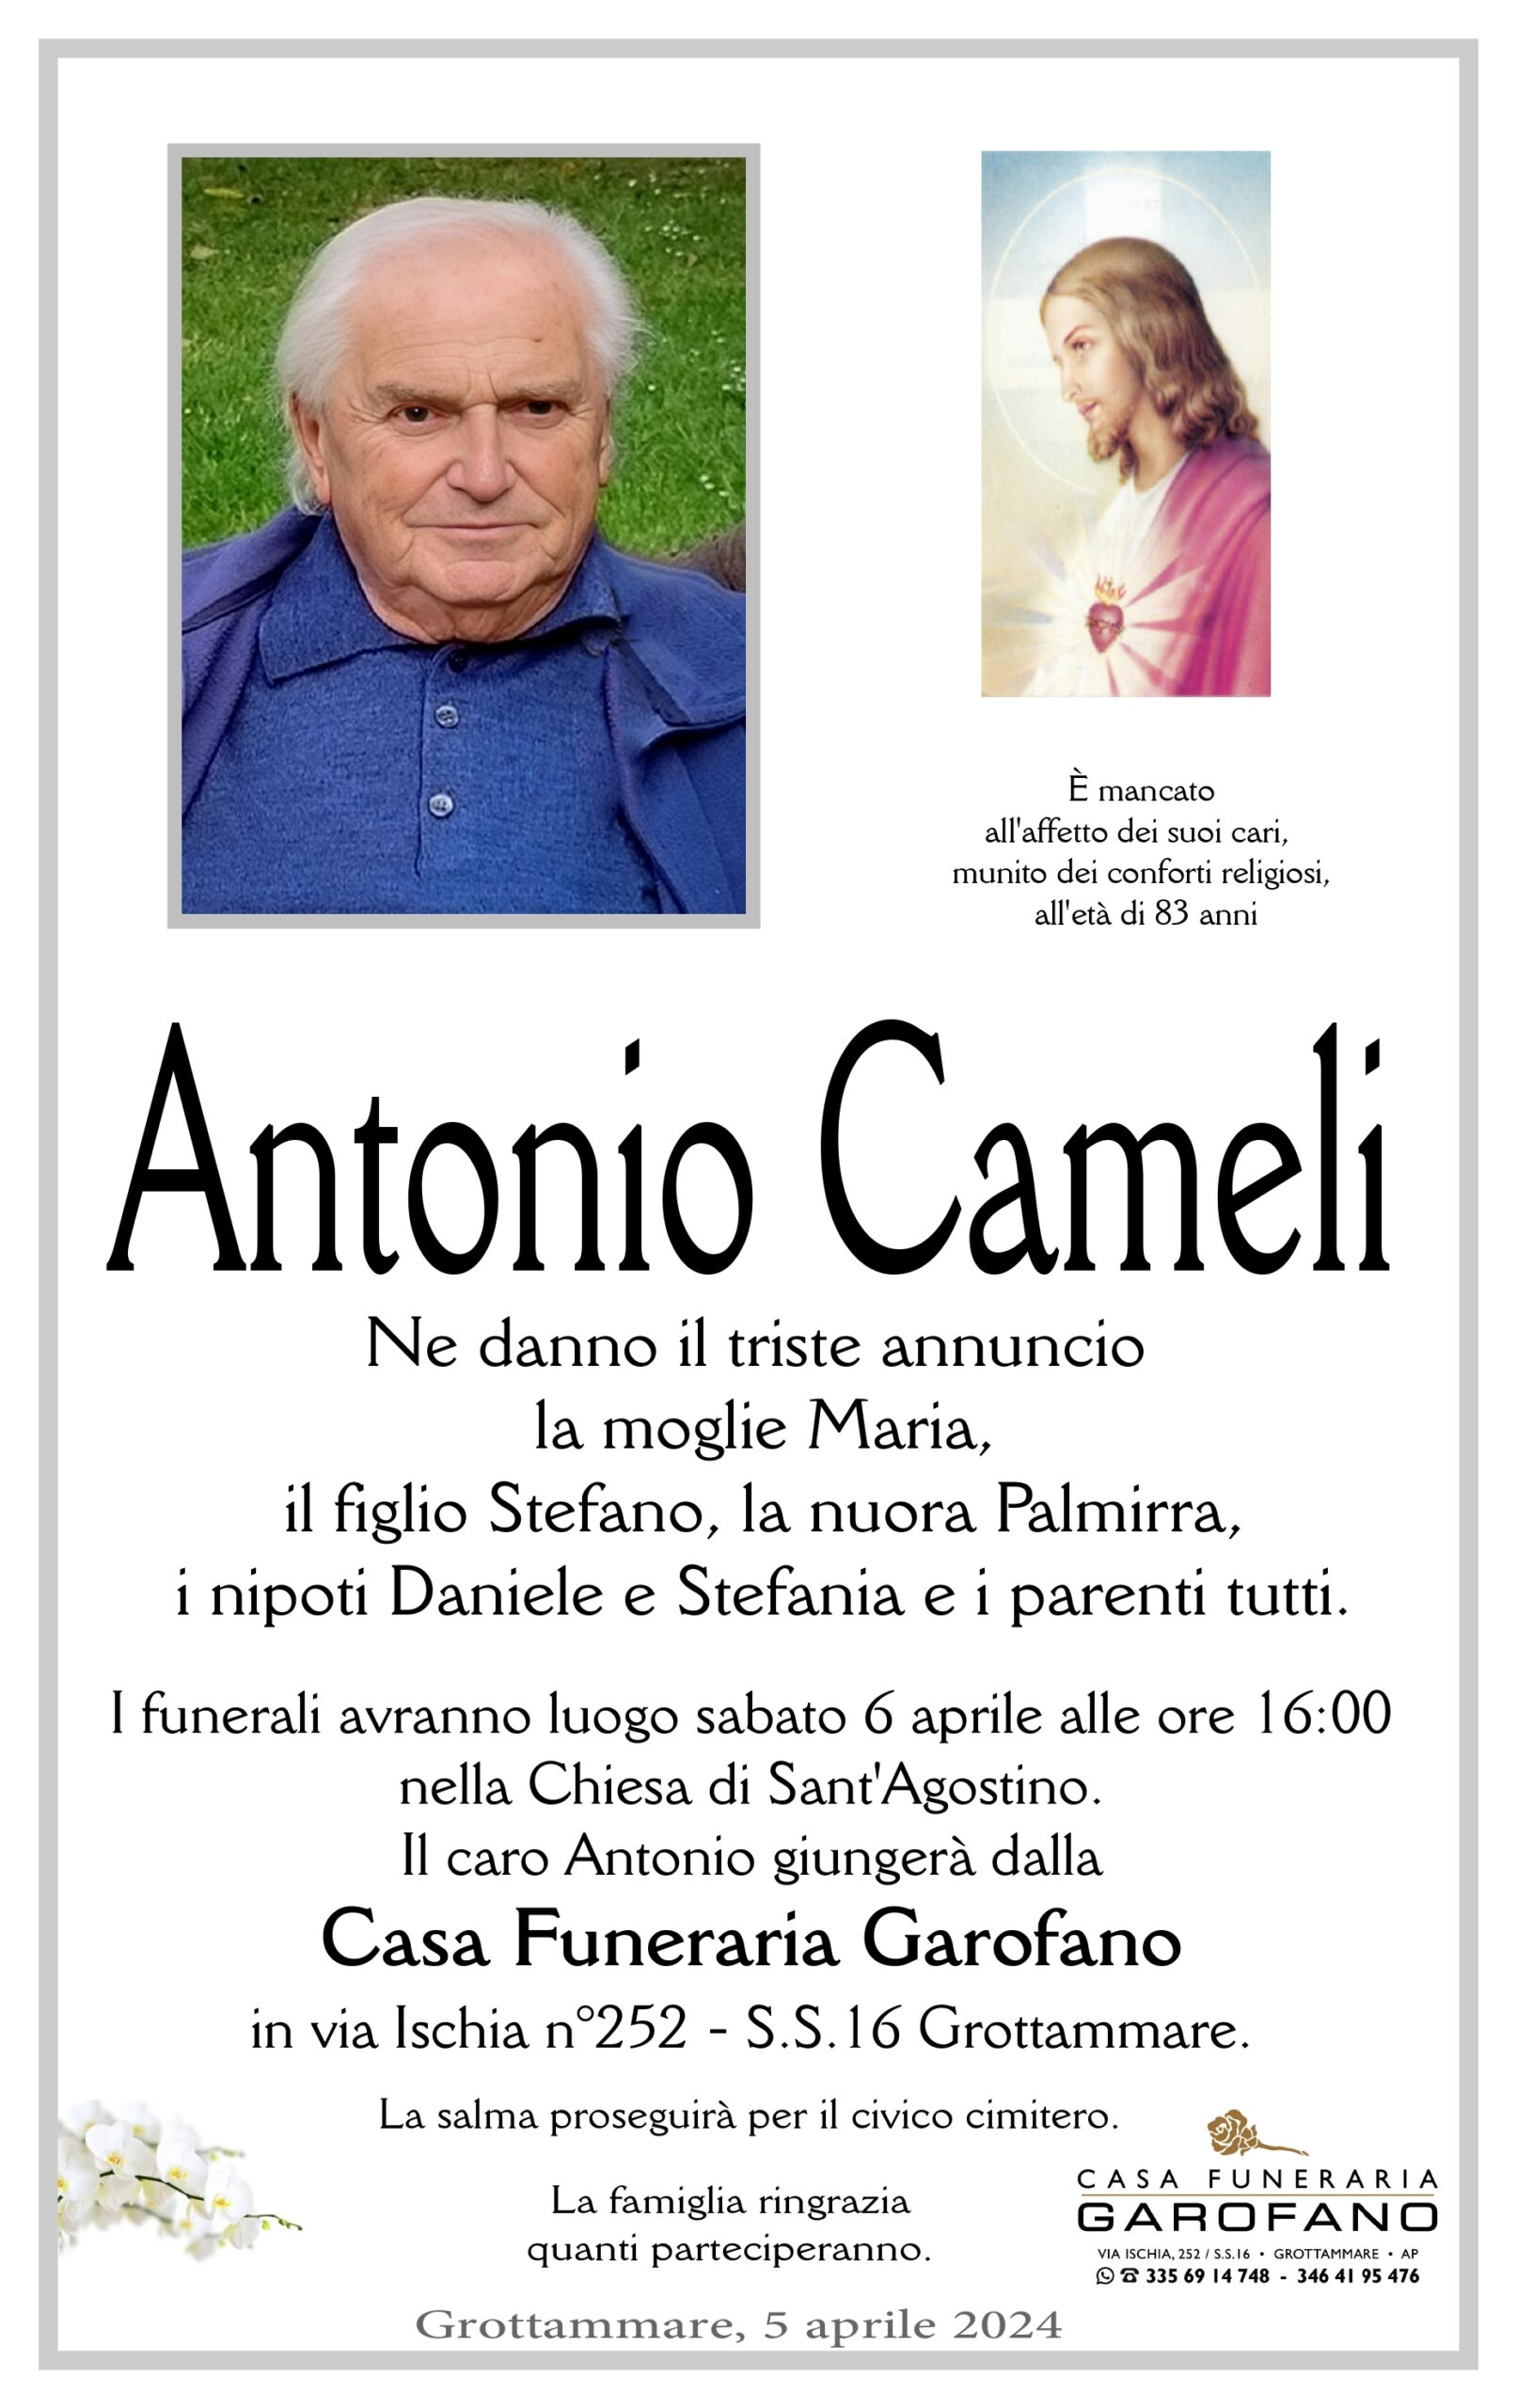 Antonio Cameli